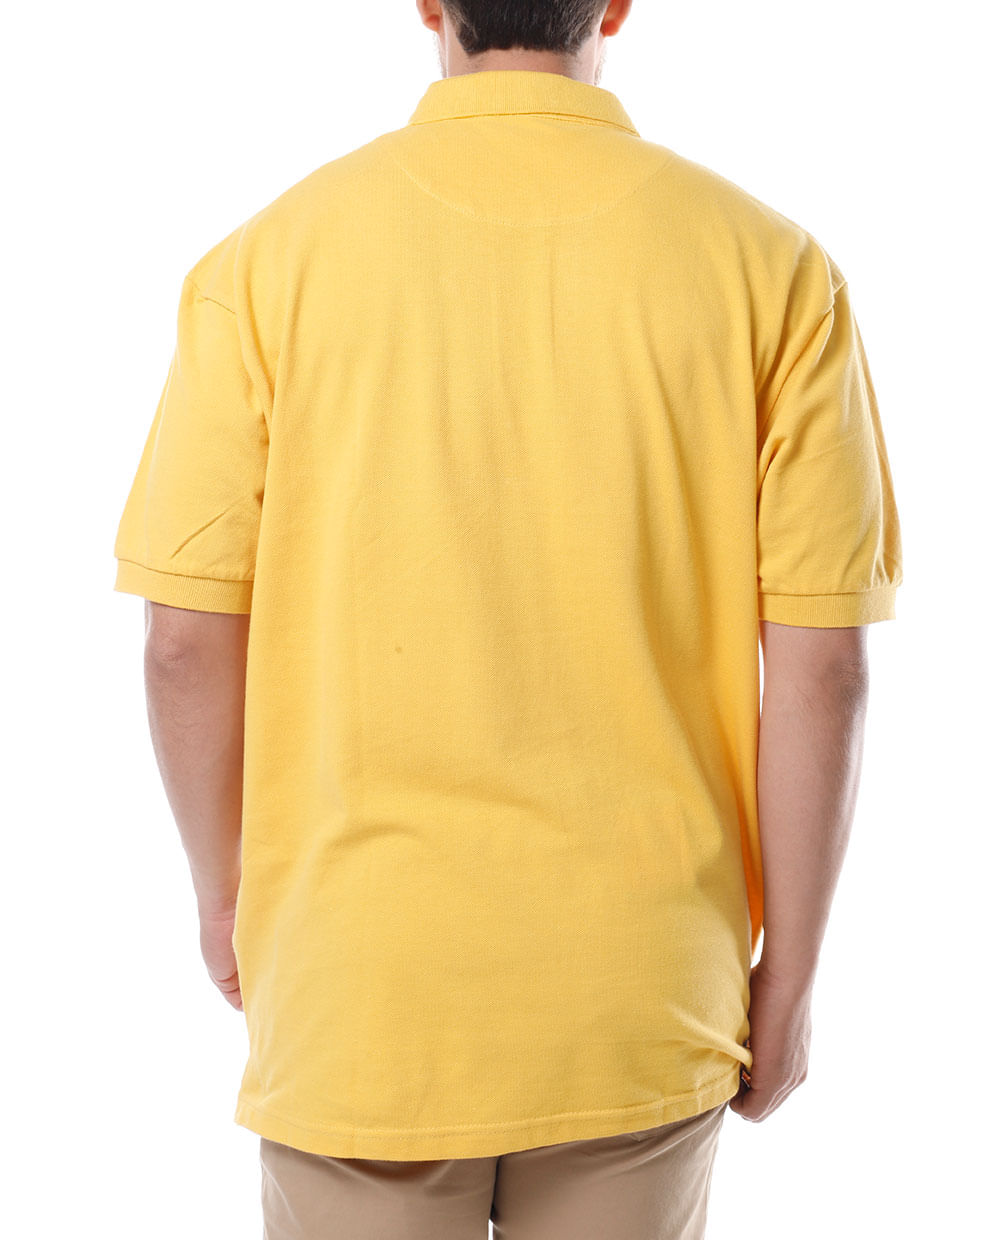 Las mejores ofertas en Tamaño Regular G-Star camisas amarillas para hombres